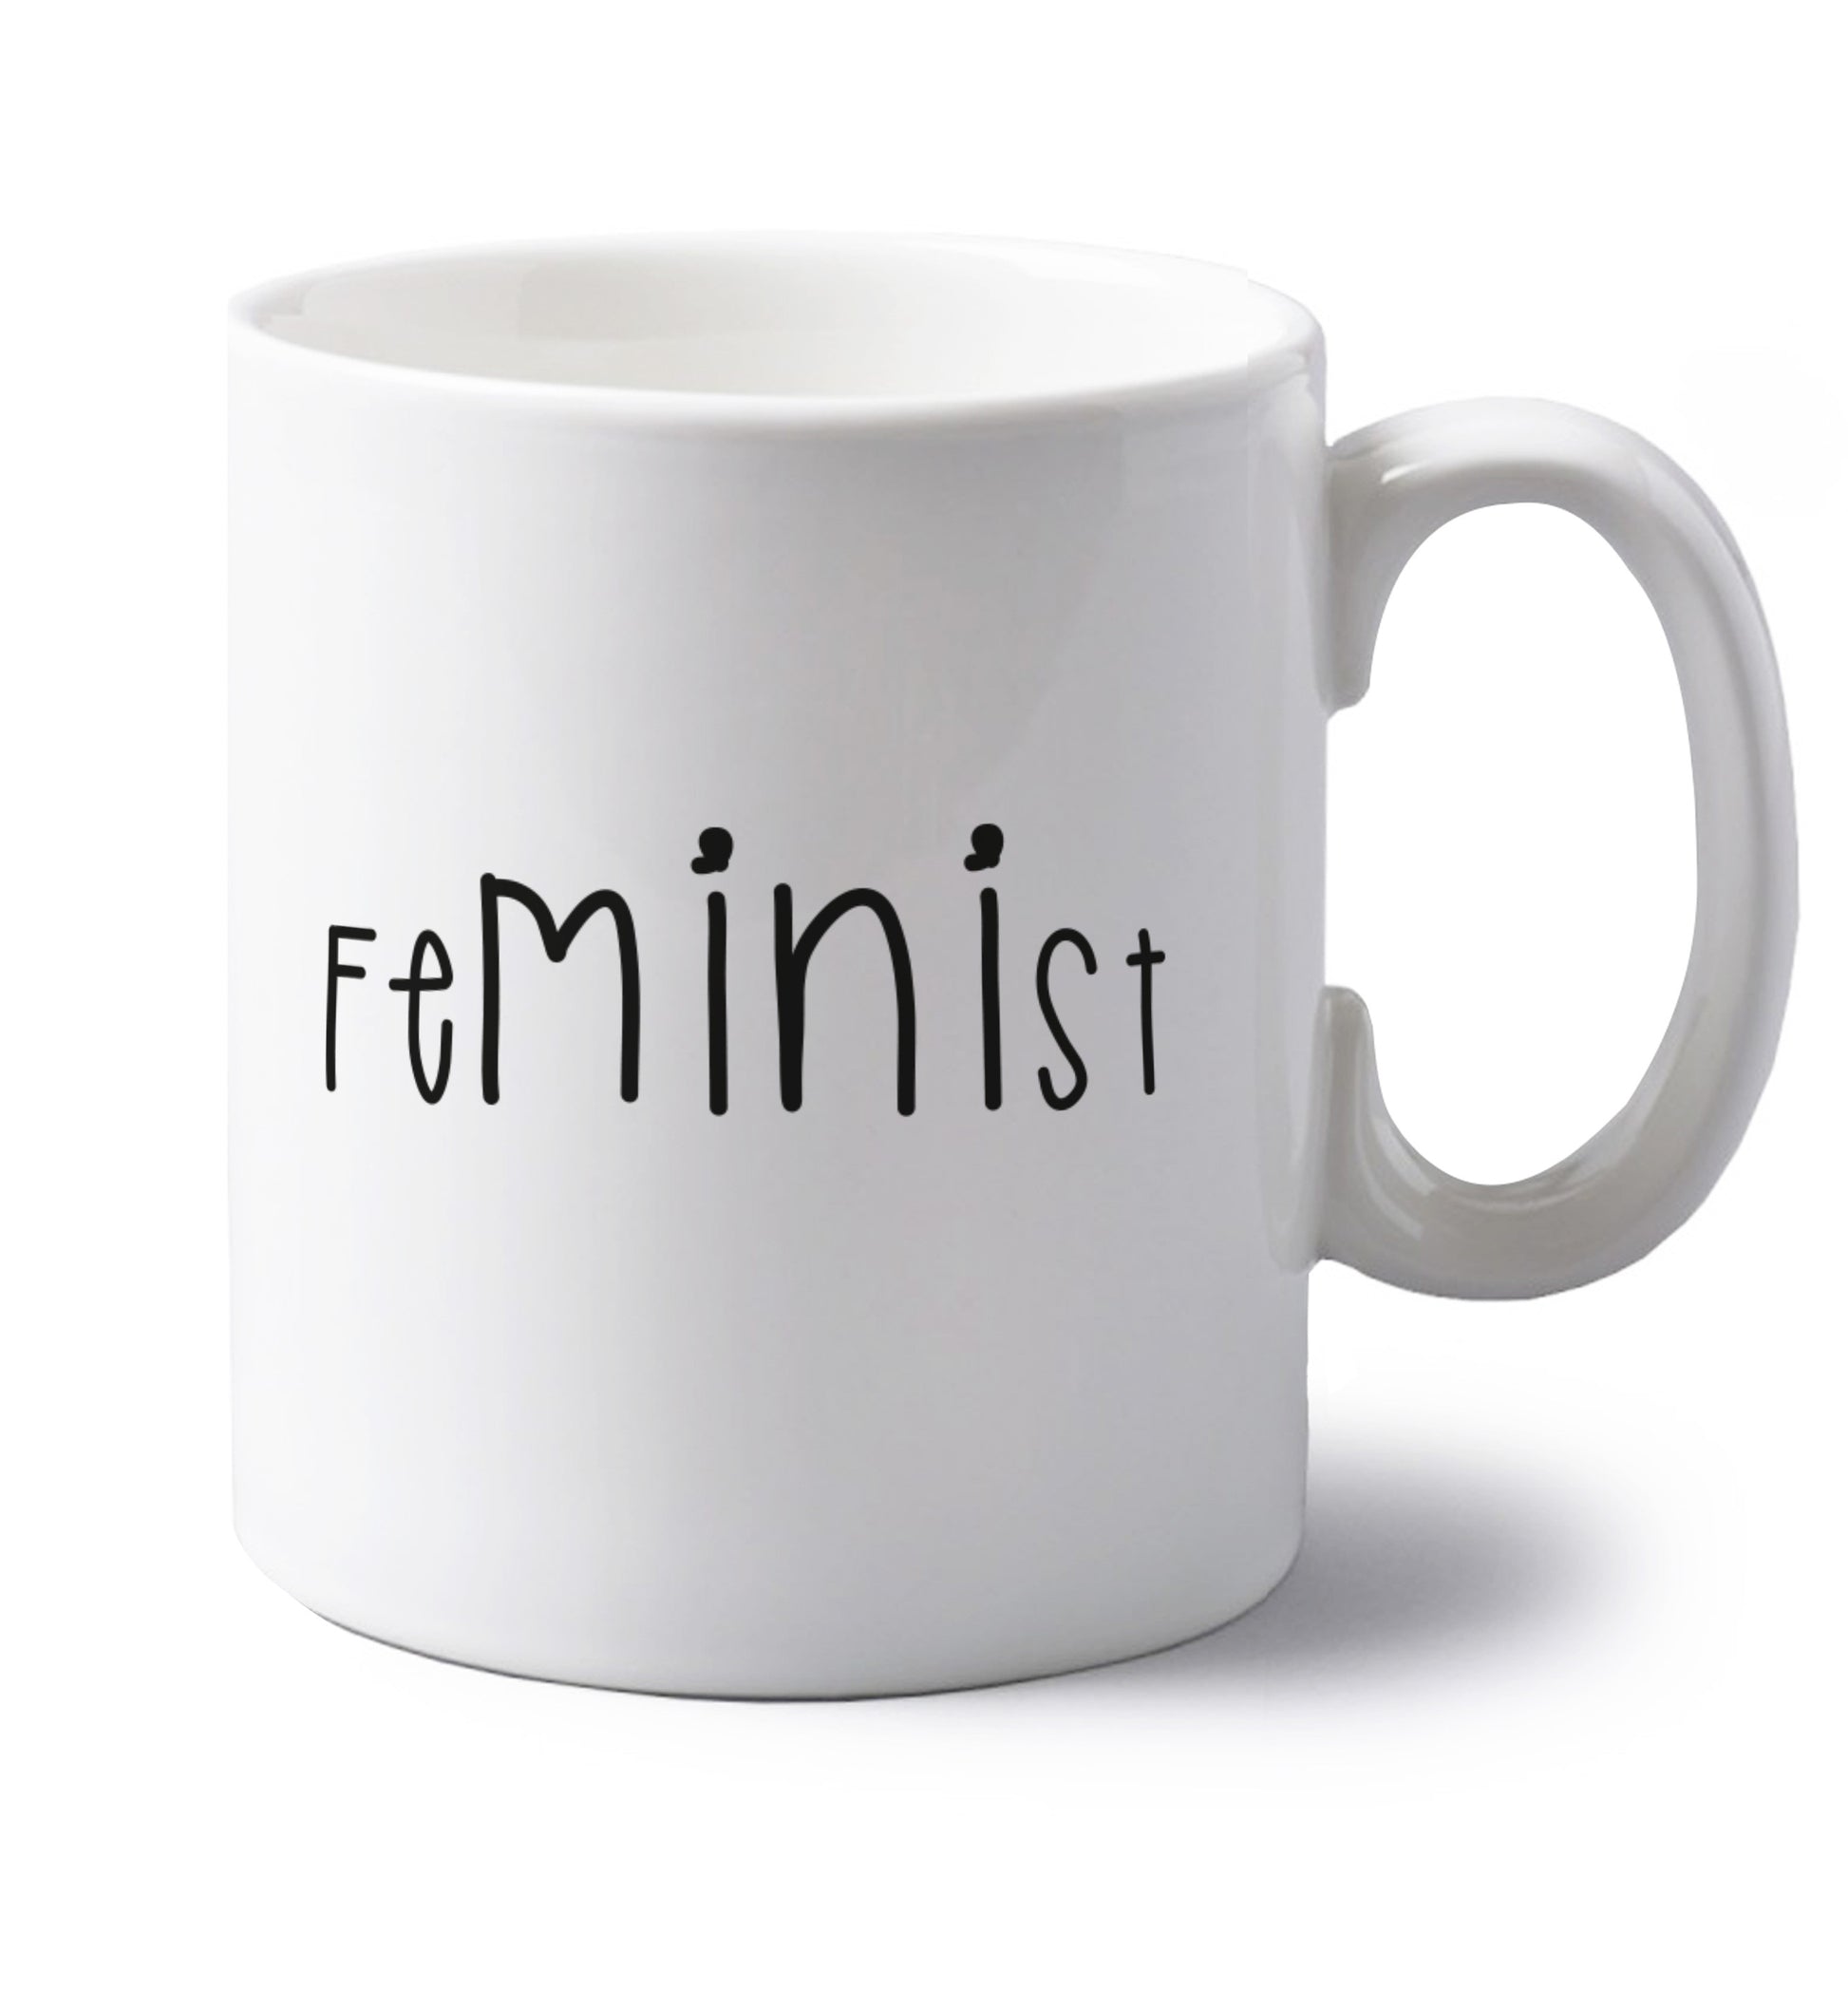 FeMINIst left handed white ceramic mug 